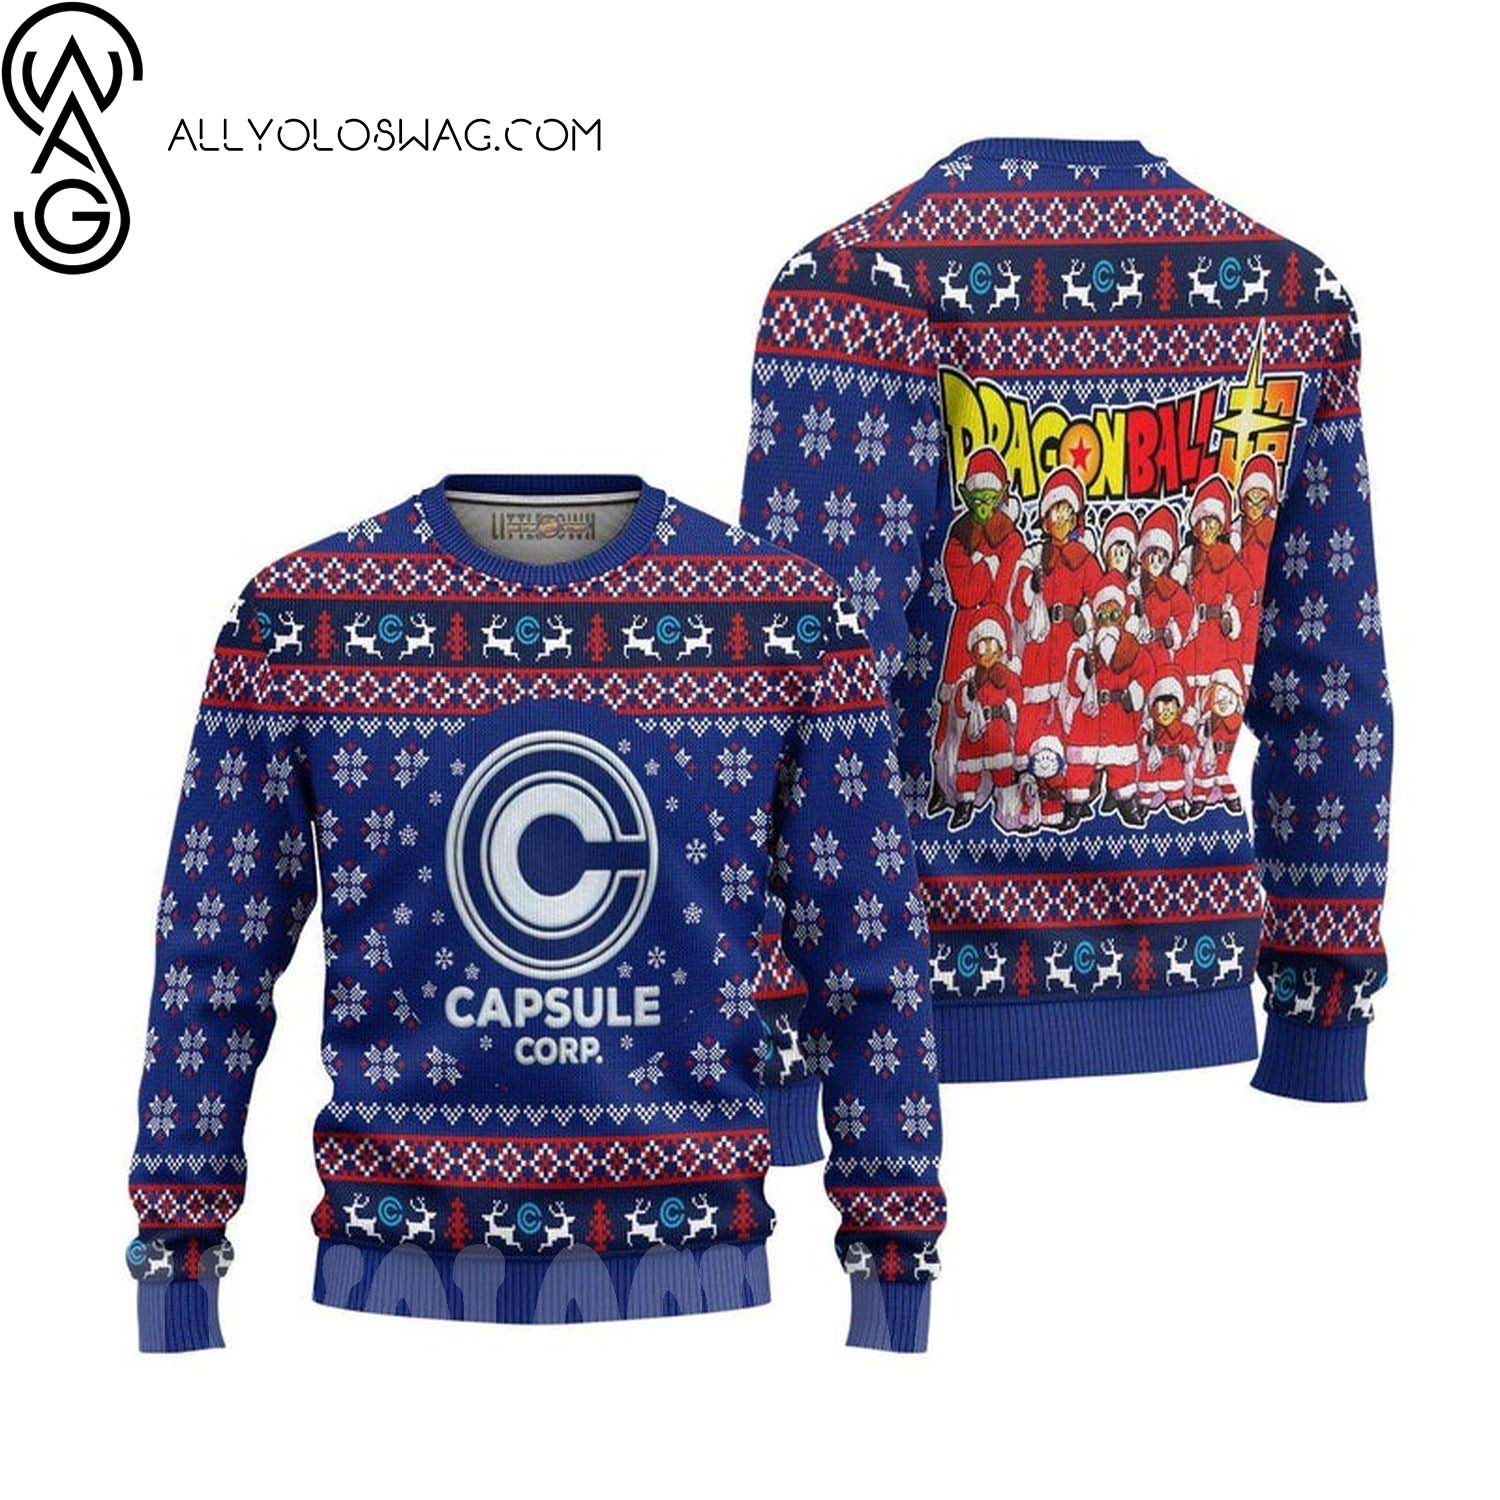 Capsule Corp Ugly Christmas Sweater Dragon Ball Anime Christmas Holiday